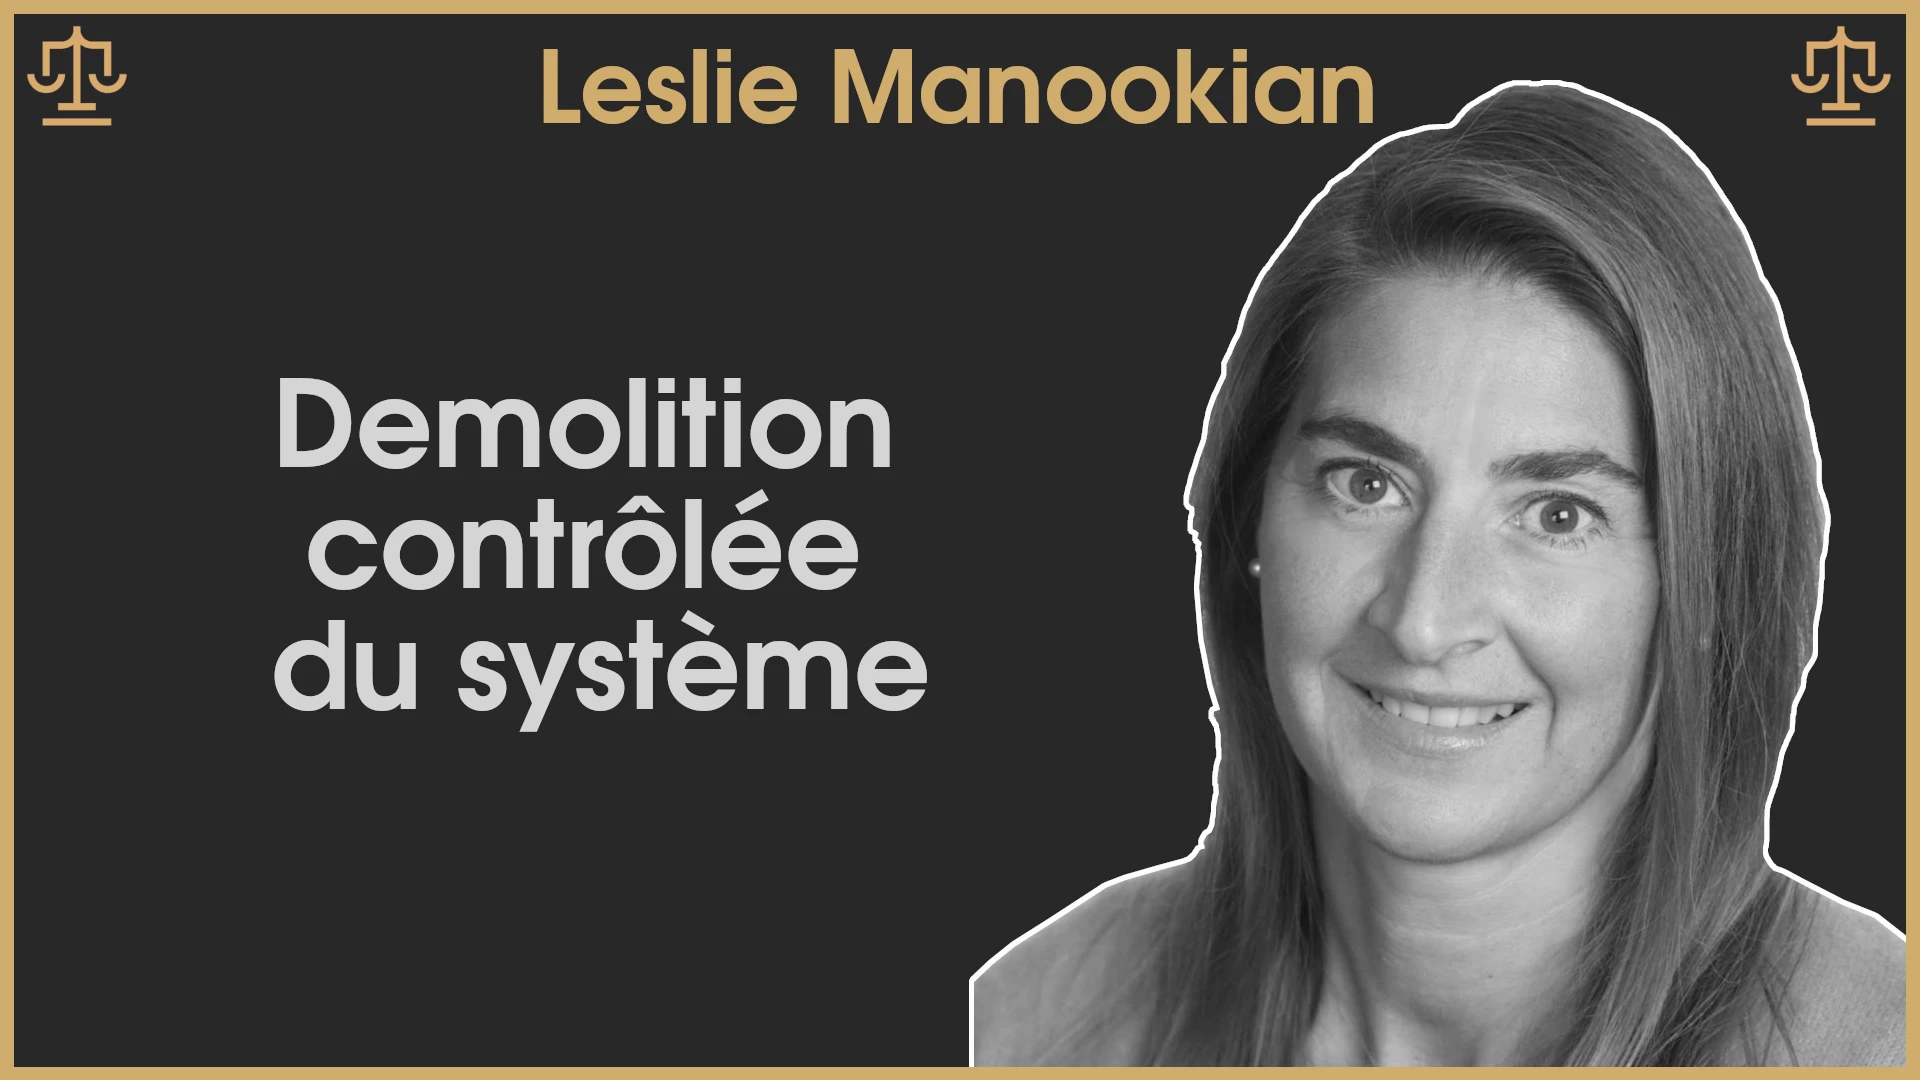 Leslie Manookian : Démolition contrôlée du système économique et politique / Grand Jury – Jour 5